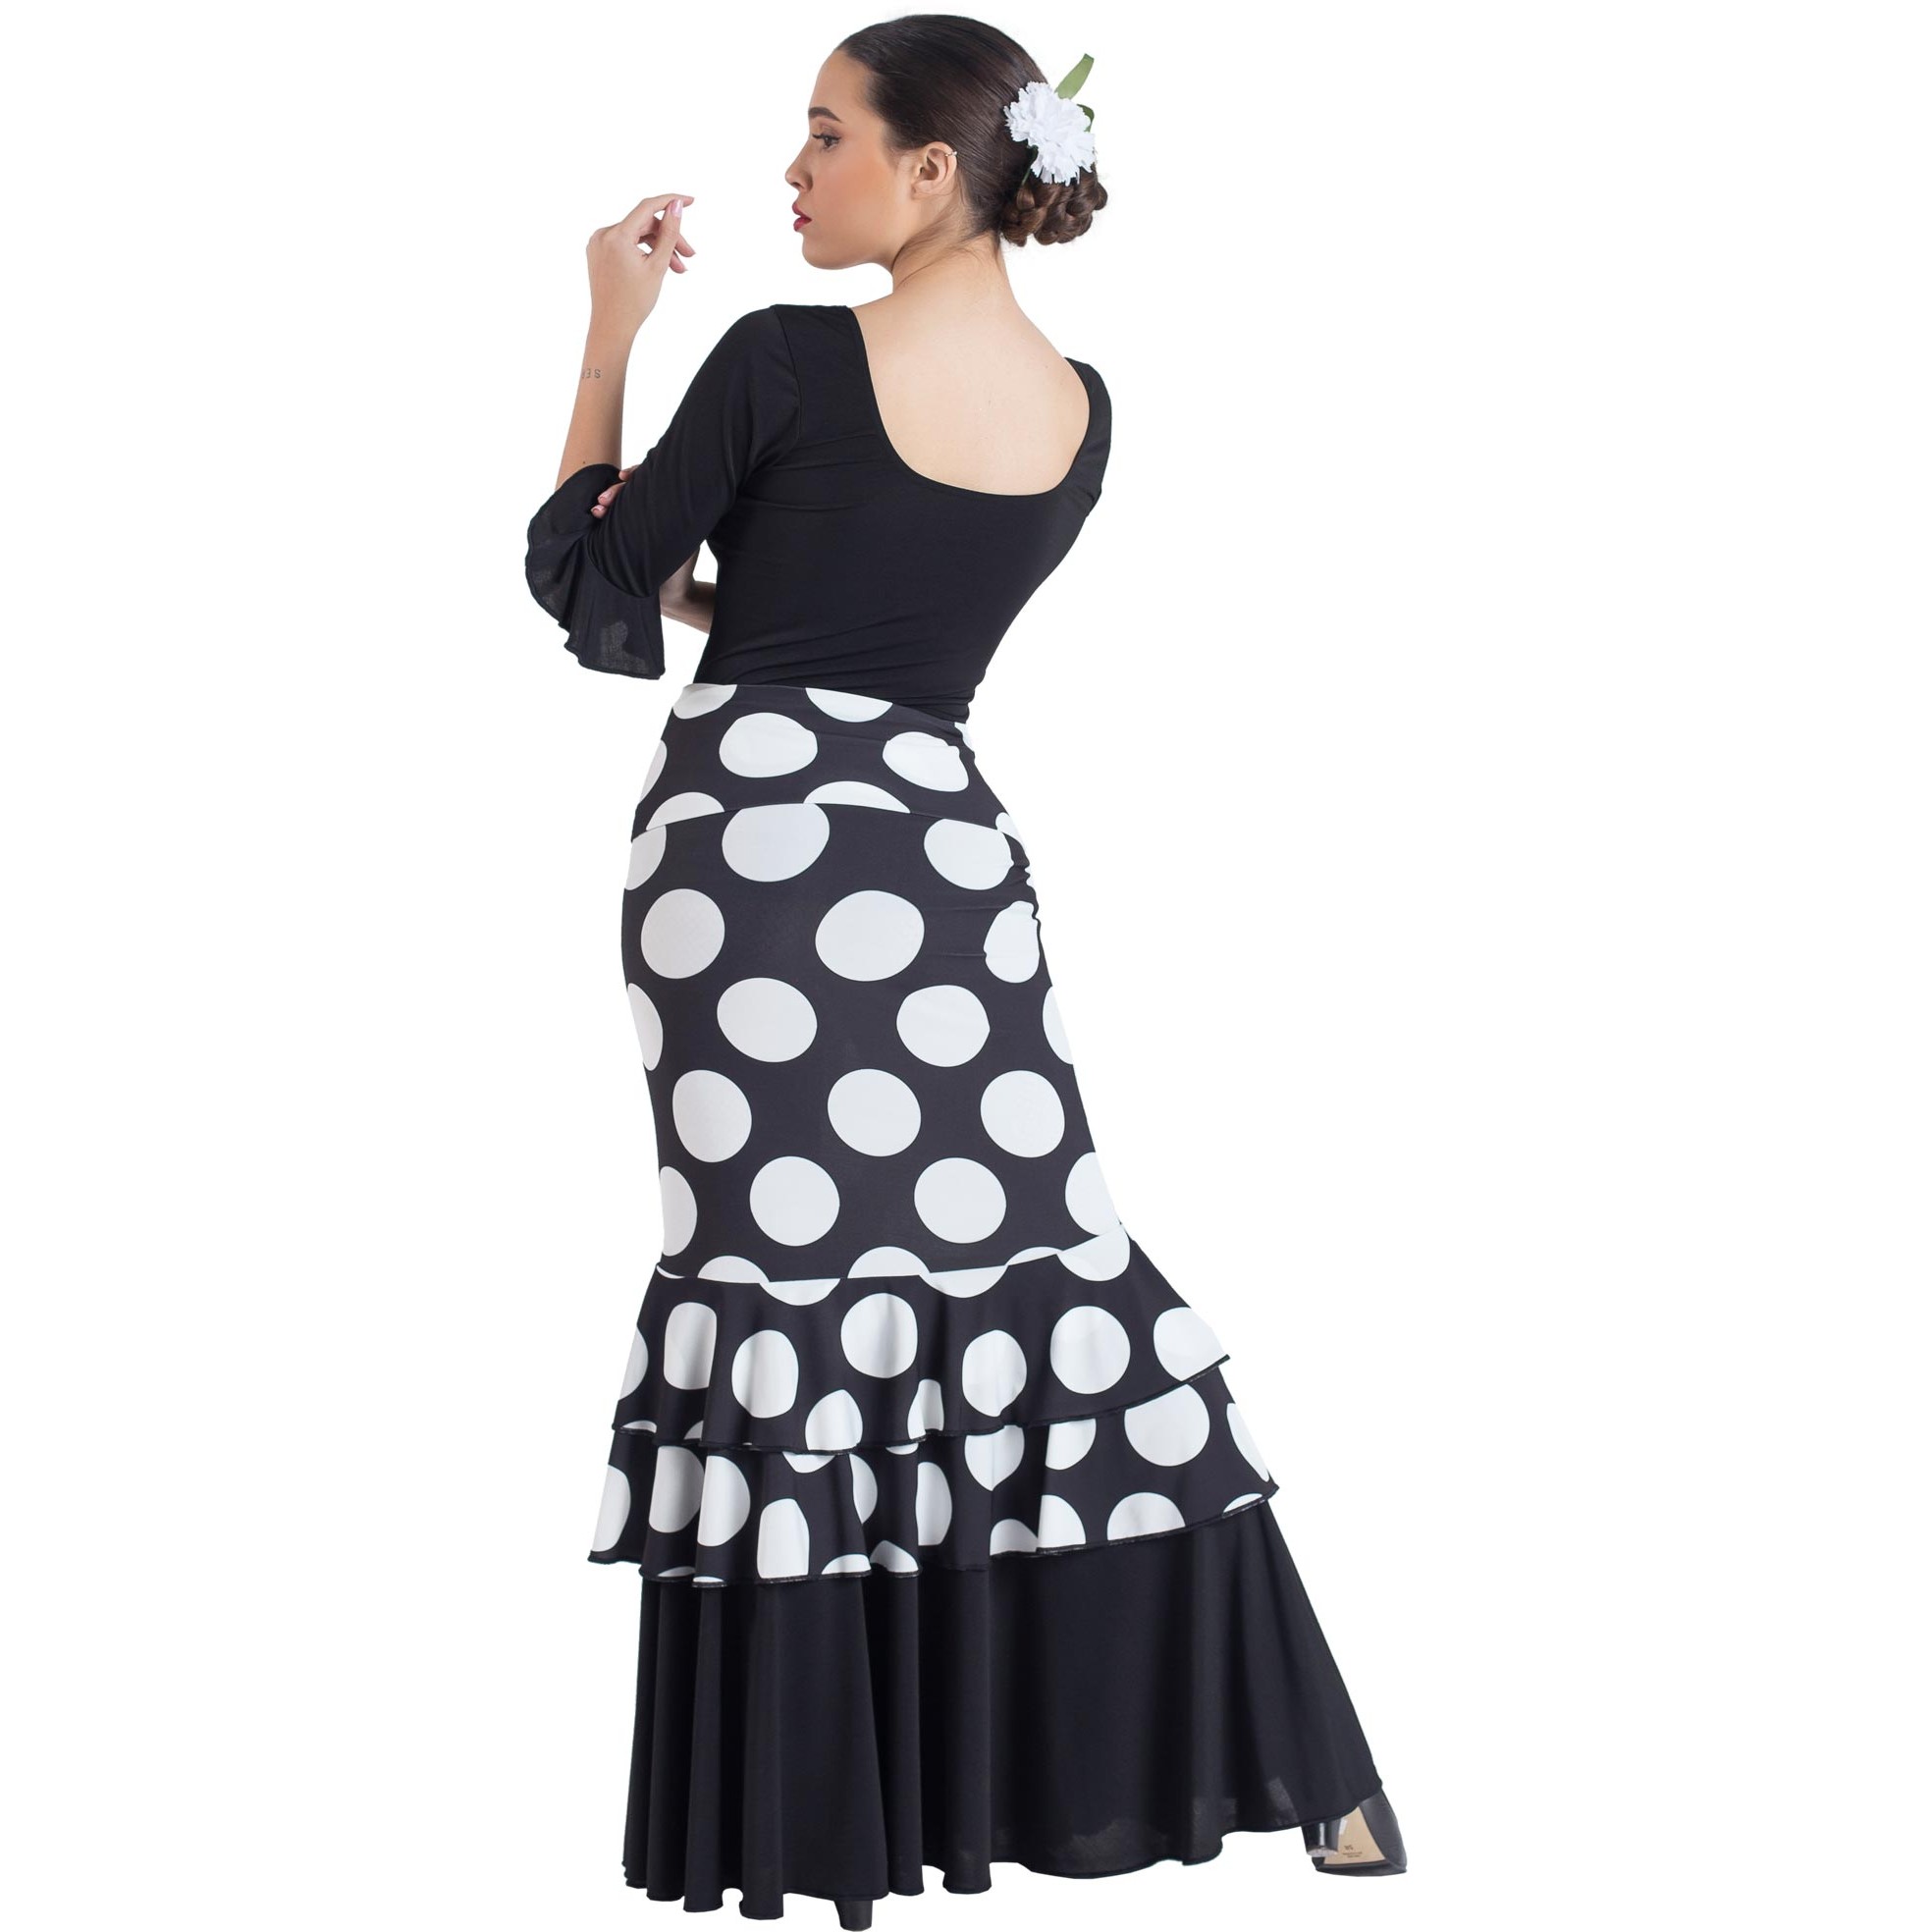 Faldas flamencas de cintura alta Stretch para Señora de diferentes colores  con lunares blancos o acompañados de lunares de otros colores, son fa…